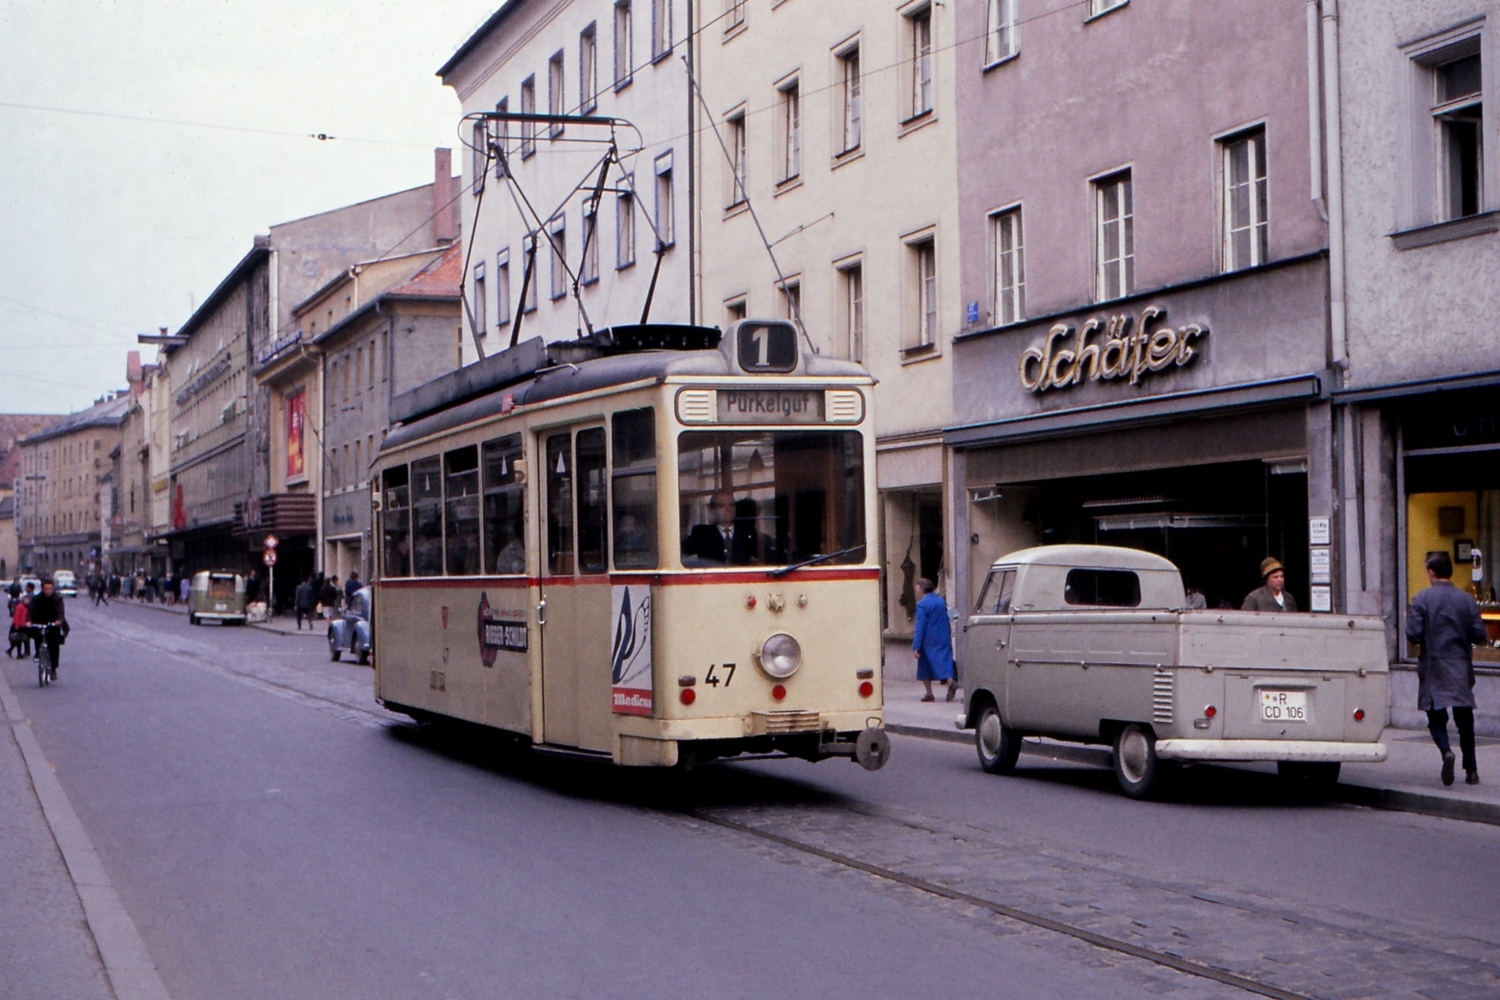 Motorový vůz číslo 47 ještě v pravidelném provozu projíždí ulicí Maximilianstraße, kam by se historické tramvaje mohly jednoho dne opět vrátit. (zdroj: IG Historische Straßenbahn Regensburg, e.V.)